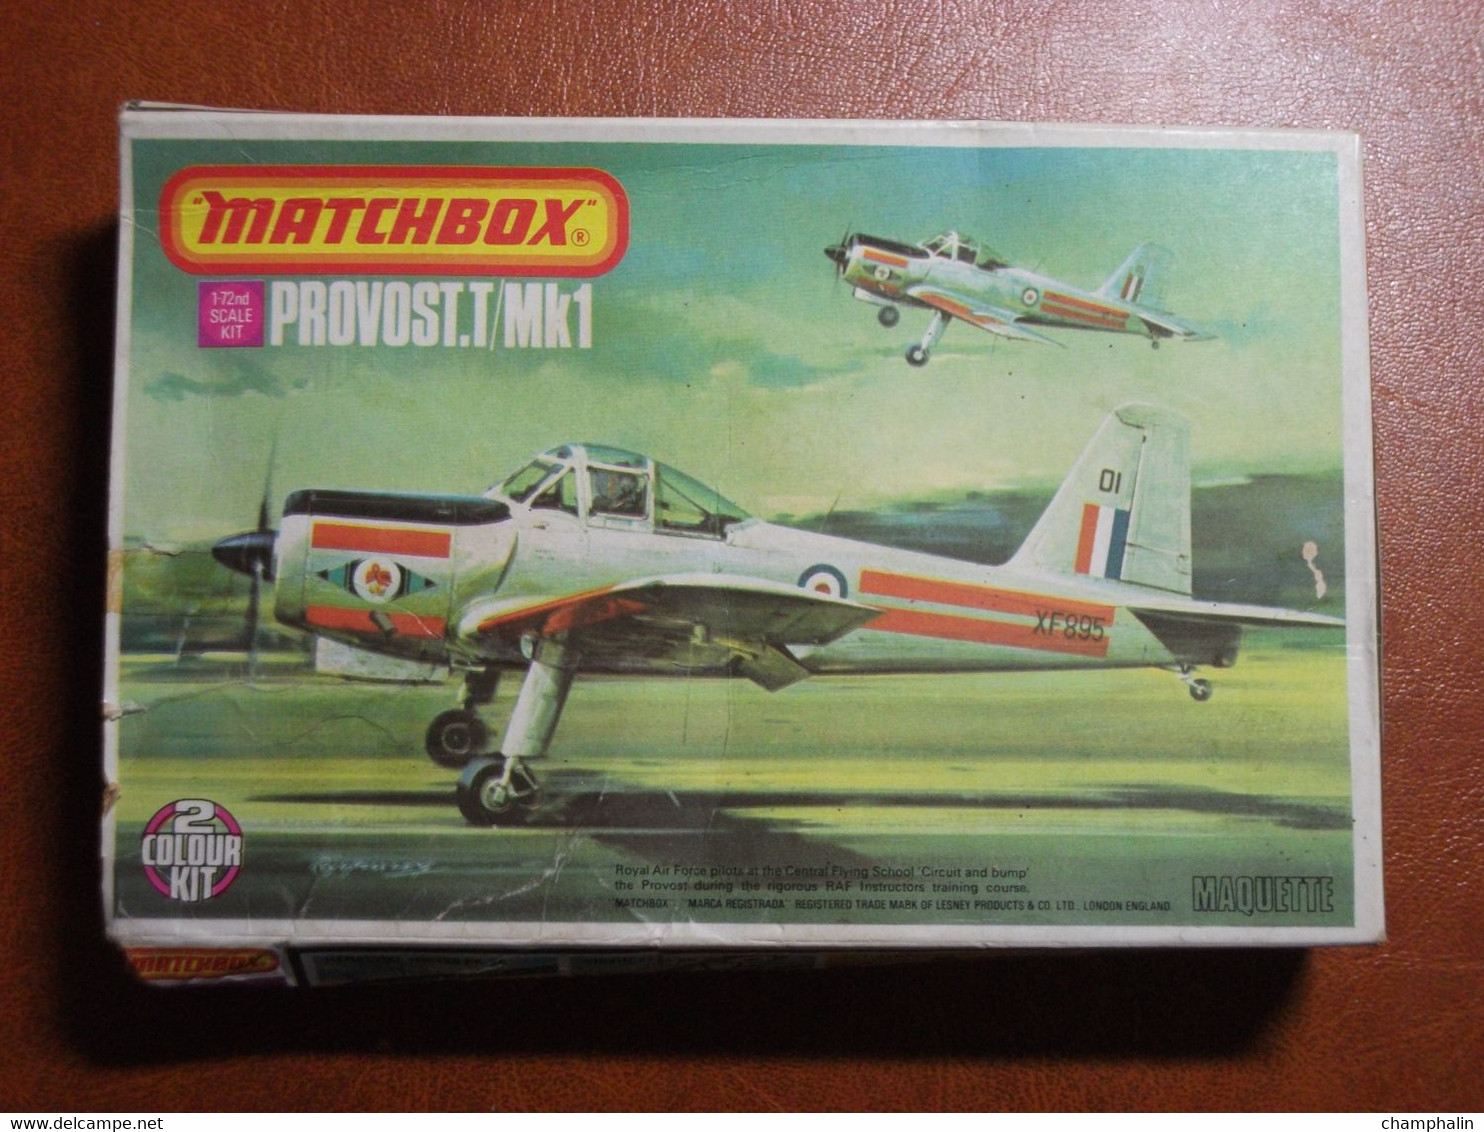 Maquette Plastique - Avion Provost.T/Mk1 Au 1/72 - Matchbox N°PK30 - Flugzeuge